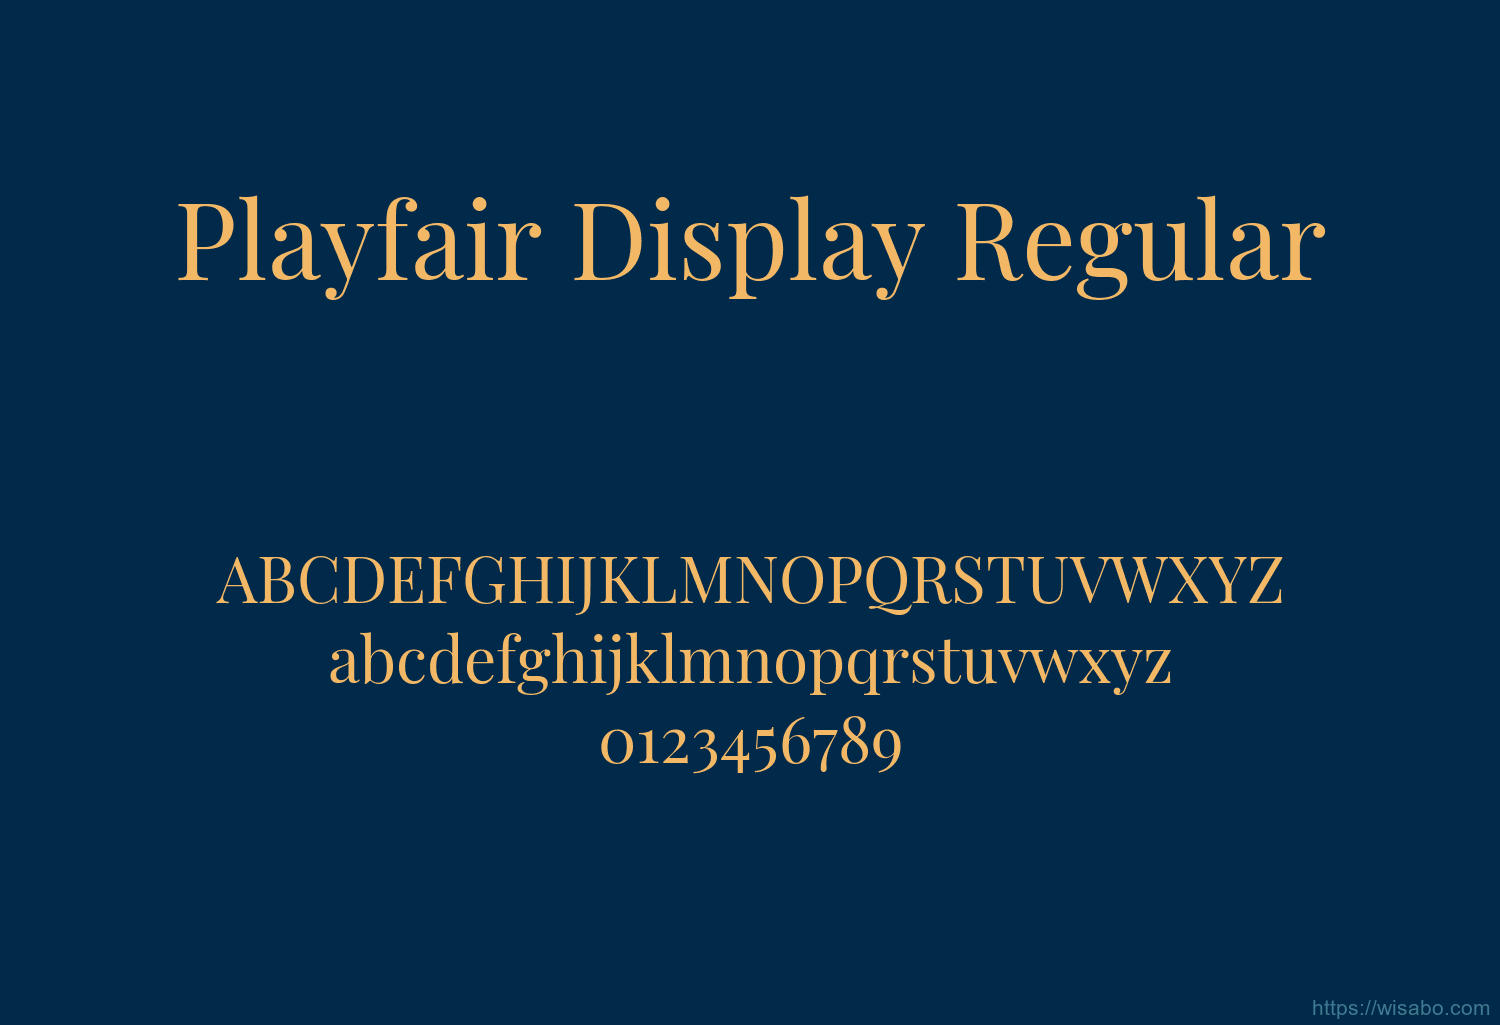 Playfair Display Regular